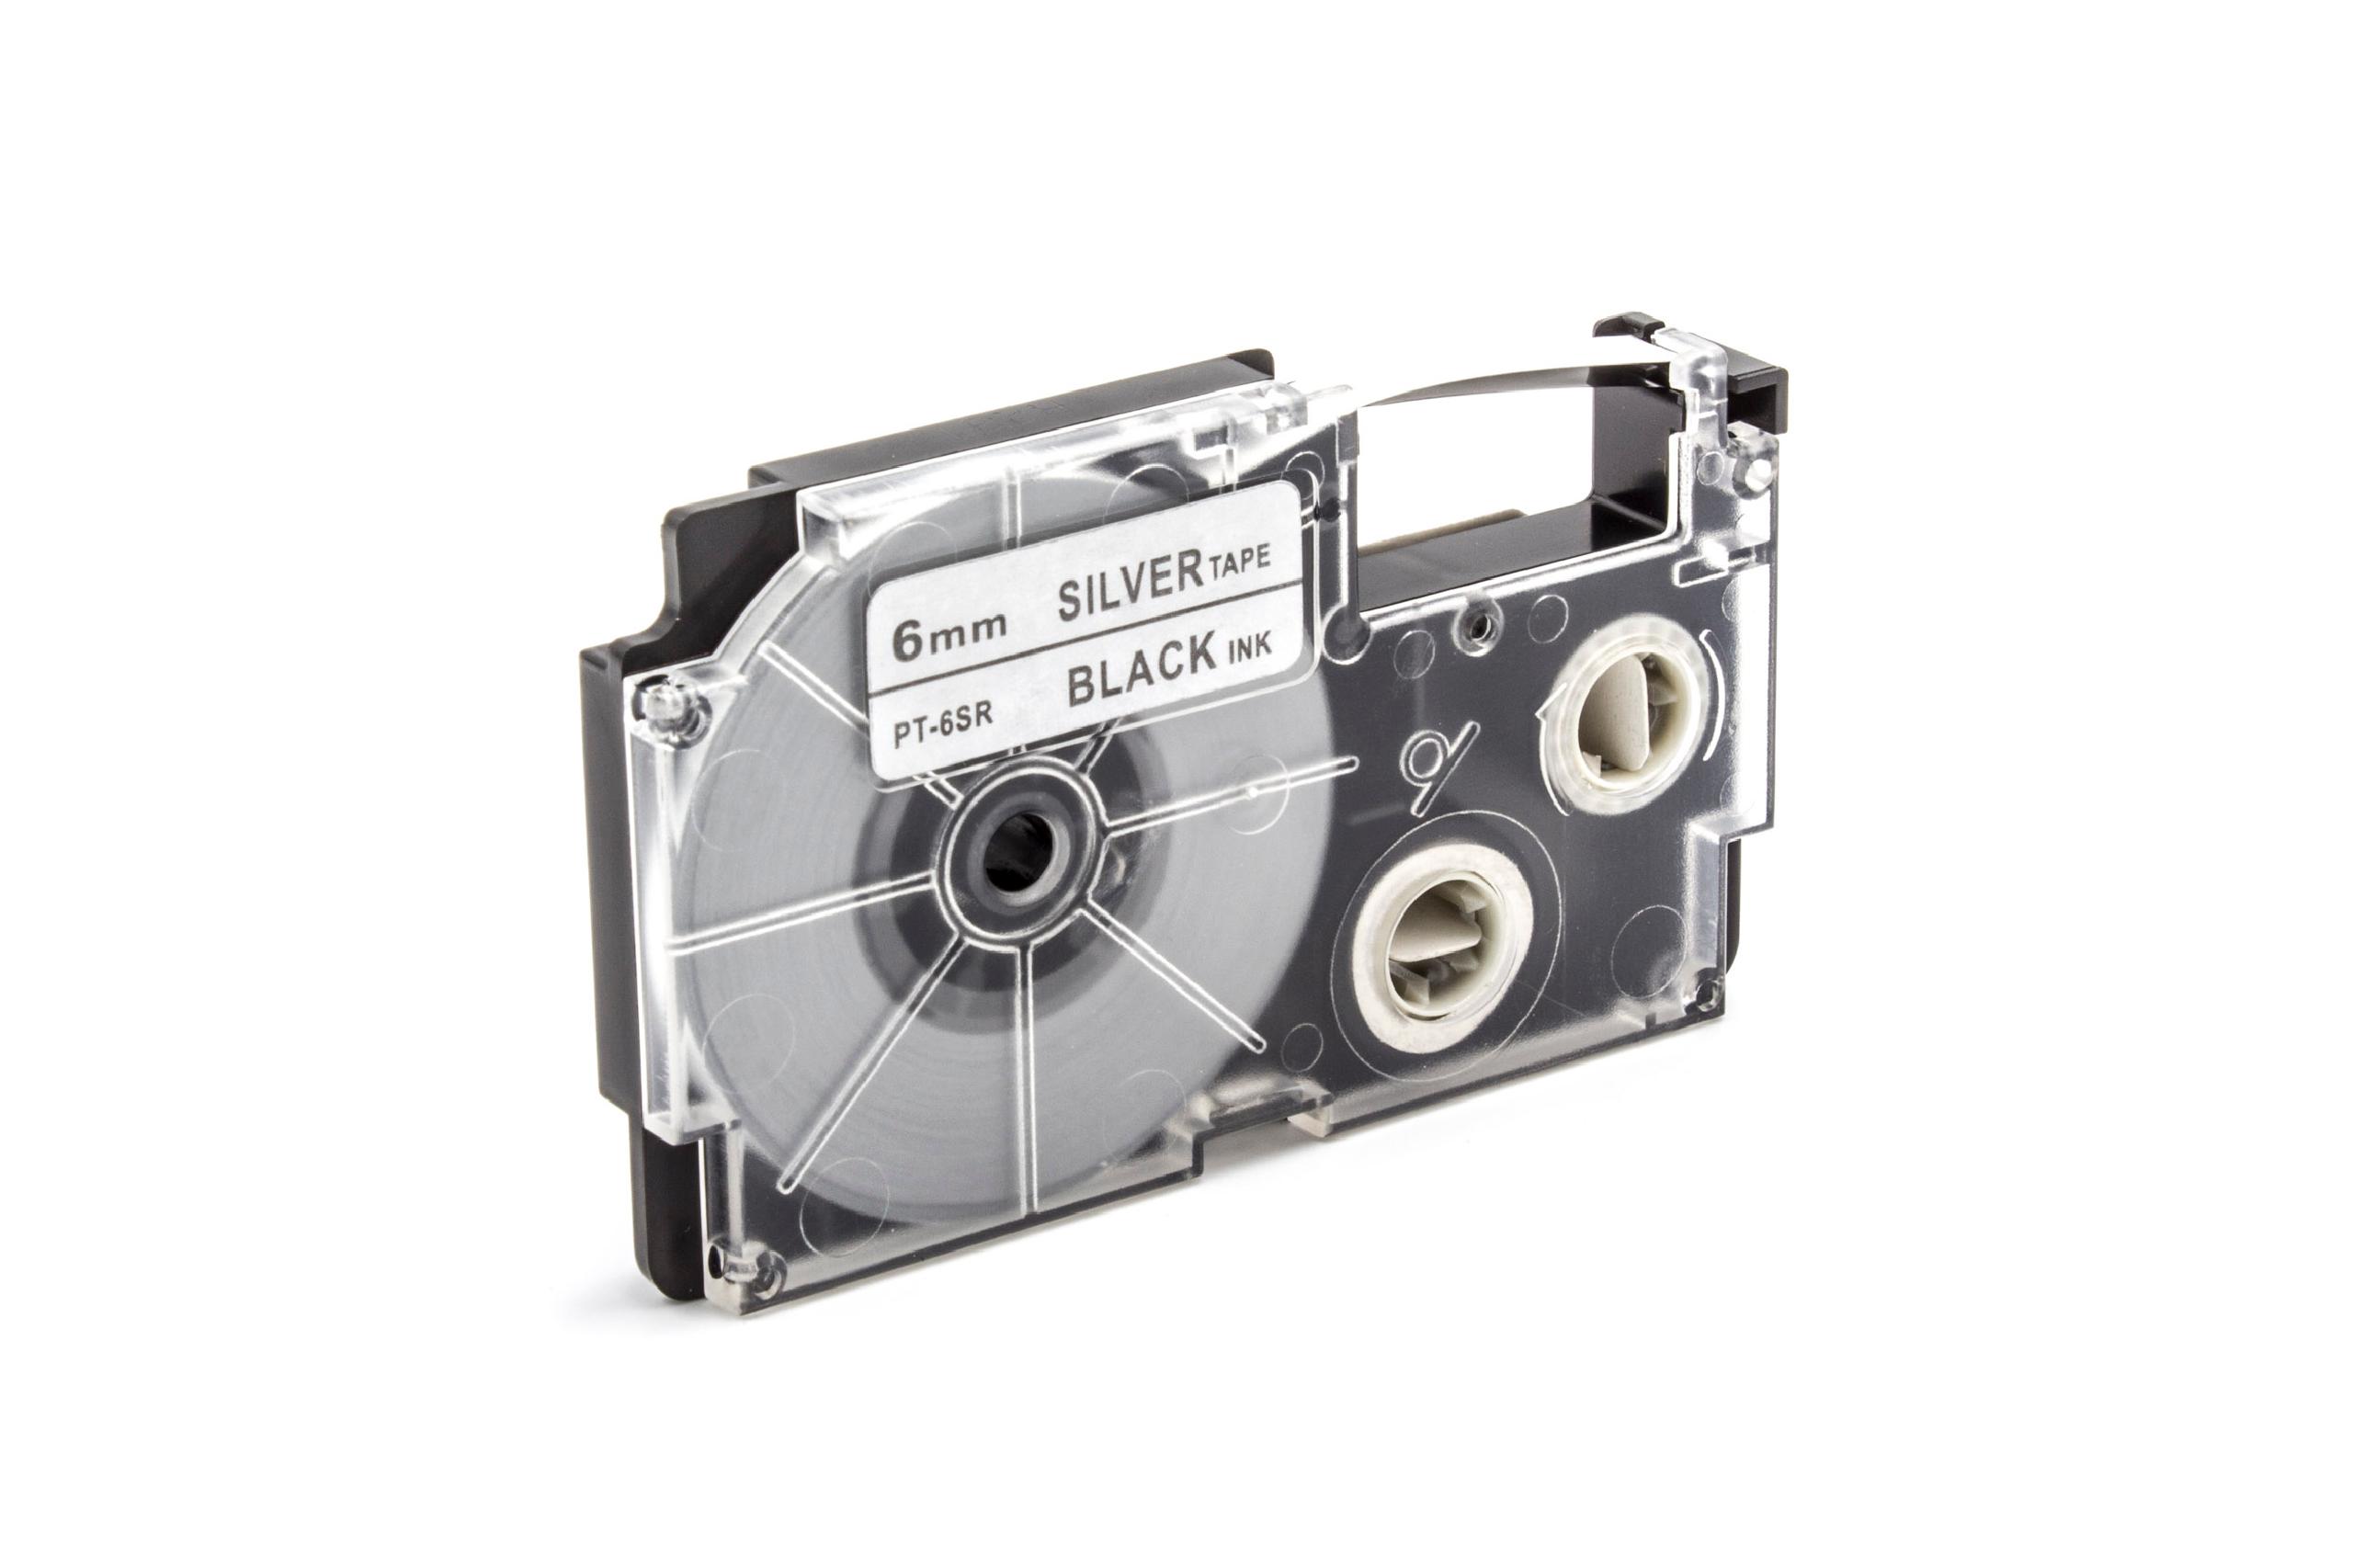 Cassetta nastro sostituisce Casio XR-6SR1, XR-6SR per etichettatrice Casio 6mm nero su argentato